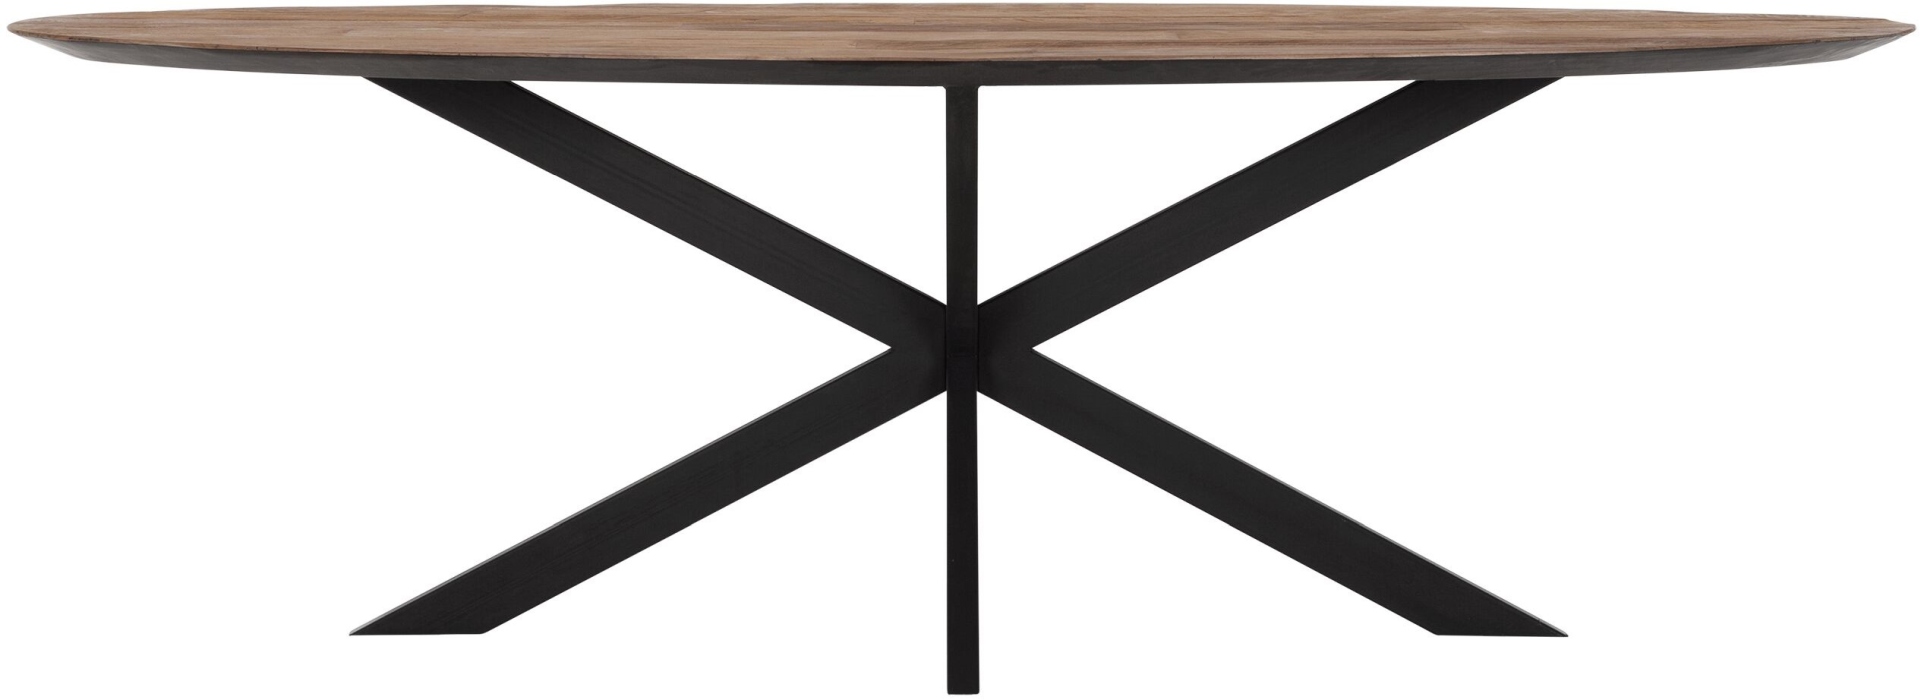 Der Esstisch Shapes überzeugt mit seinem modernem aber auch massivem Design. Gefertigt wurde der Tisch aus recyceltem Teakholz, welches einen natürlichen Farbton besitzt. Das Gestell ist aus Metall und ist Schwarz. Der Tisch hat eine Länge von 240 cm.